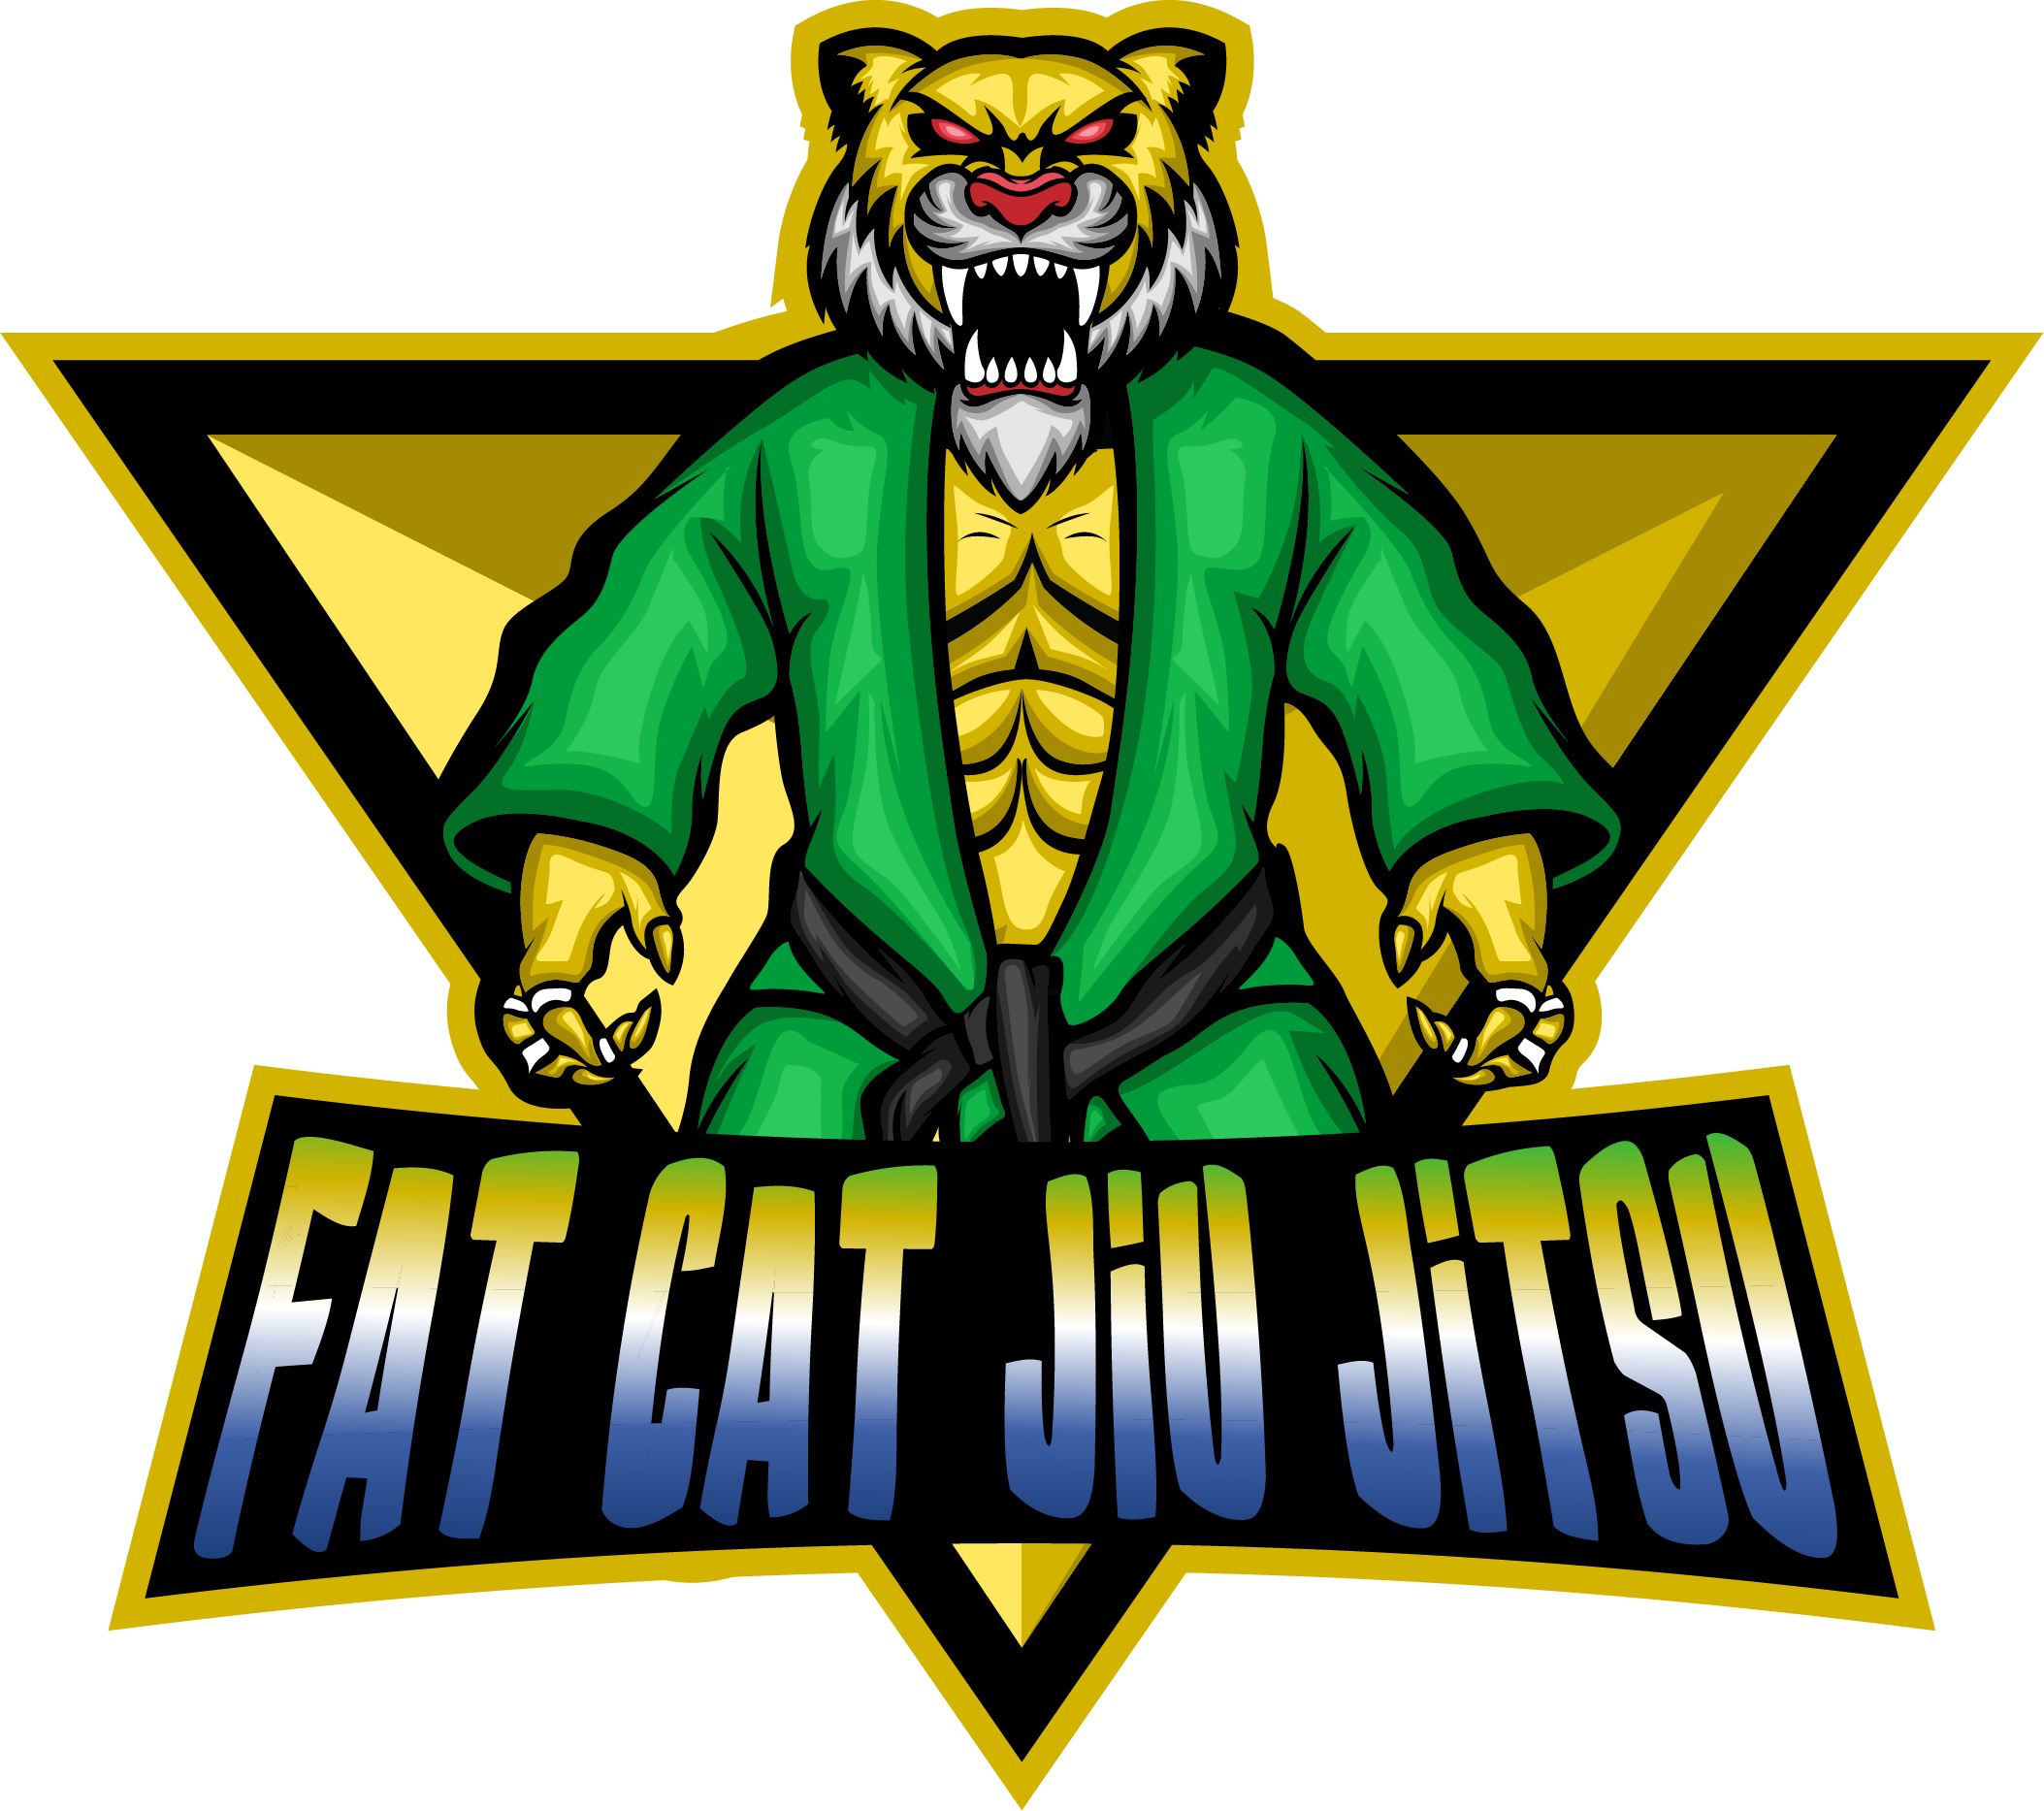 FAT CAT JIU JITSU 845-222-6283